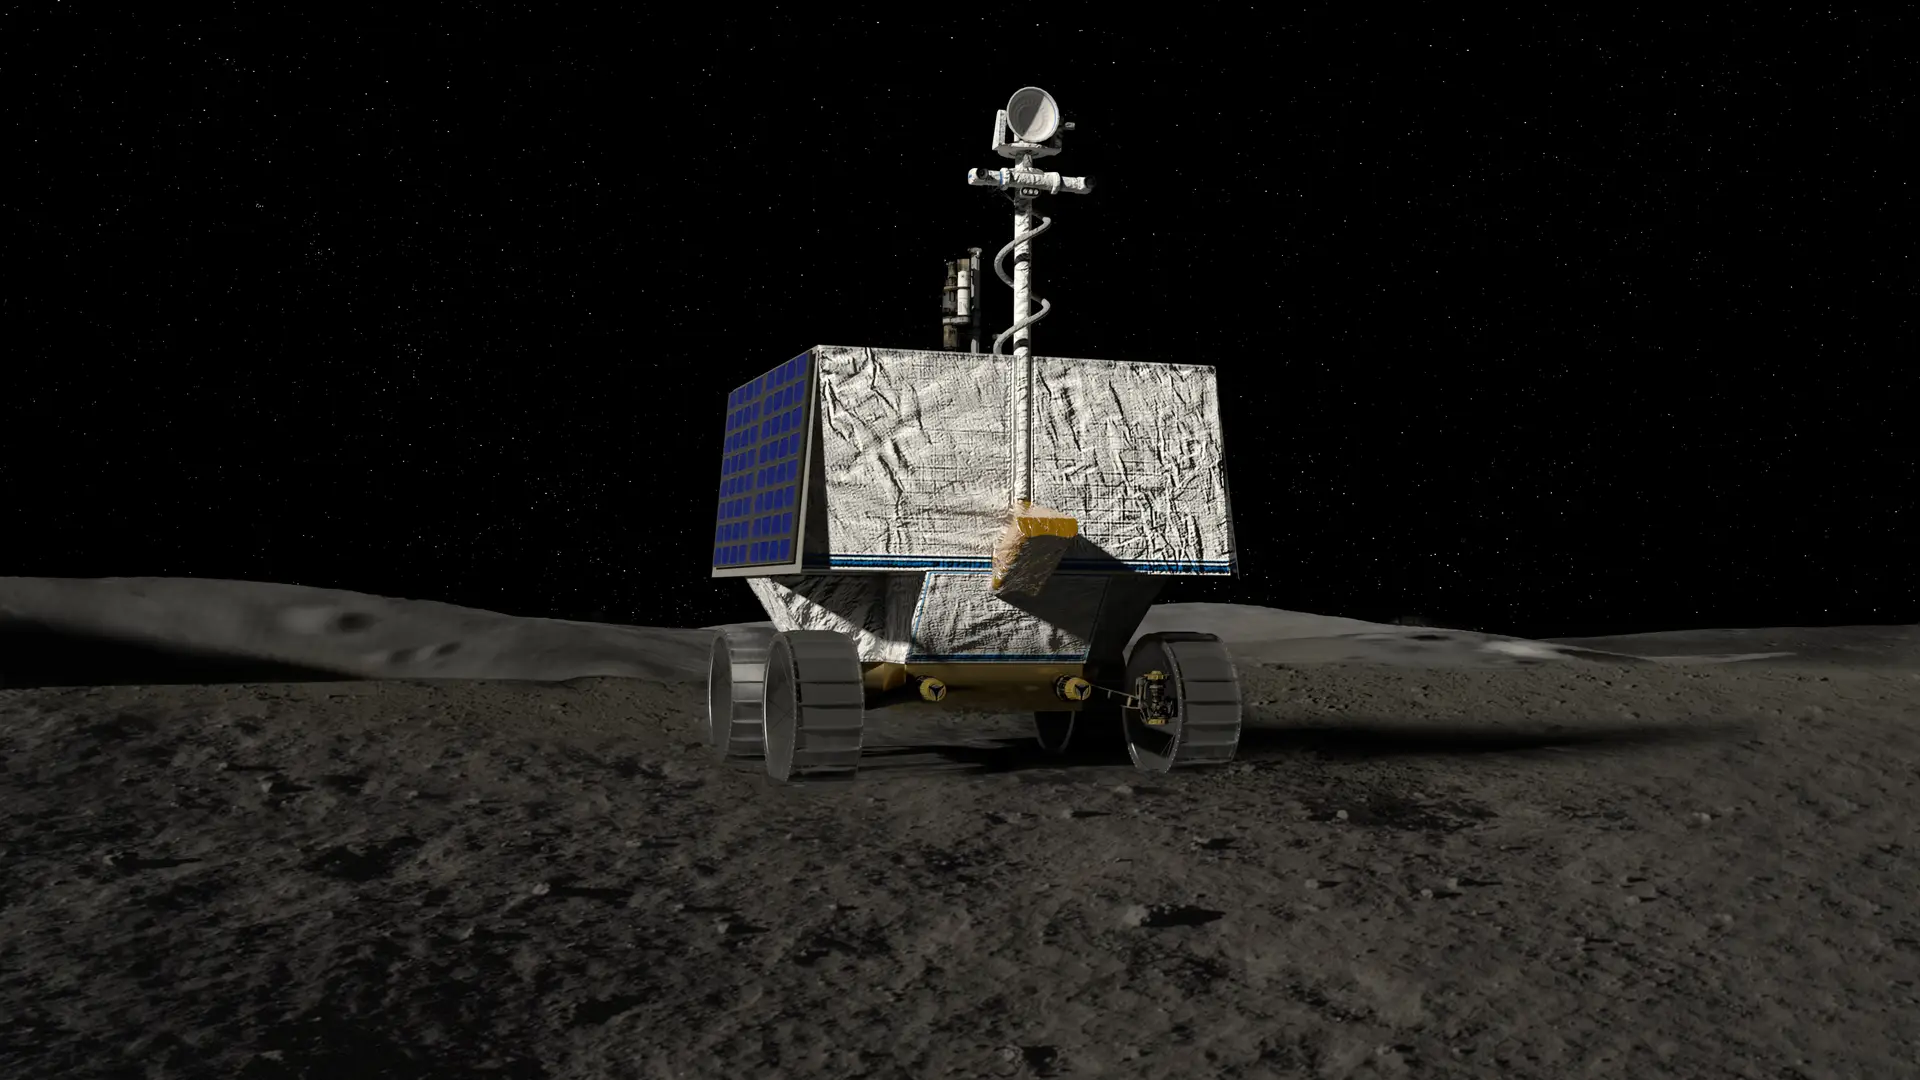 Desenho de VIPER, um robô móvel que percorrerá o Polo Sul da Lua em busca de gelo. A missão VIPER vai procurar onde está a água e quanto estará disponível, um passo significativo para o objetivo final da NASA de uma presença sustentável e de longo prazo na Lua - tornando eventualmente possível explorar Marte e mais além.